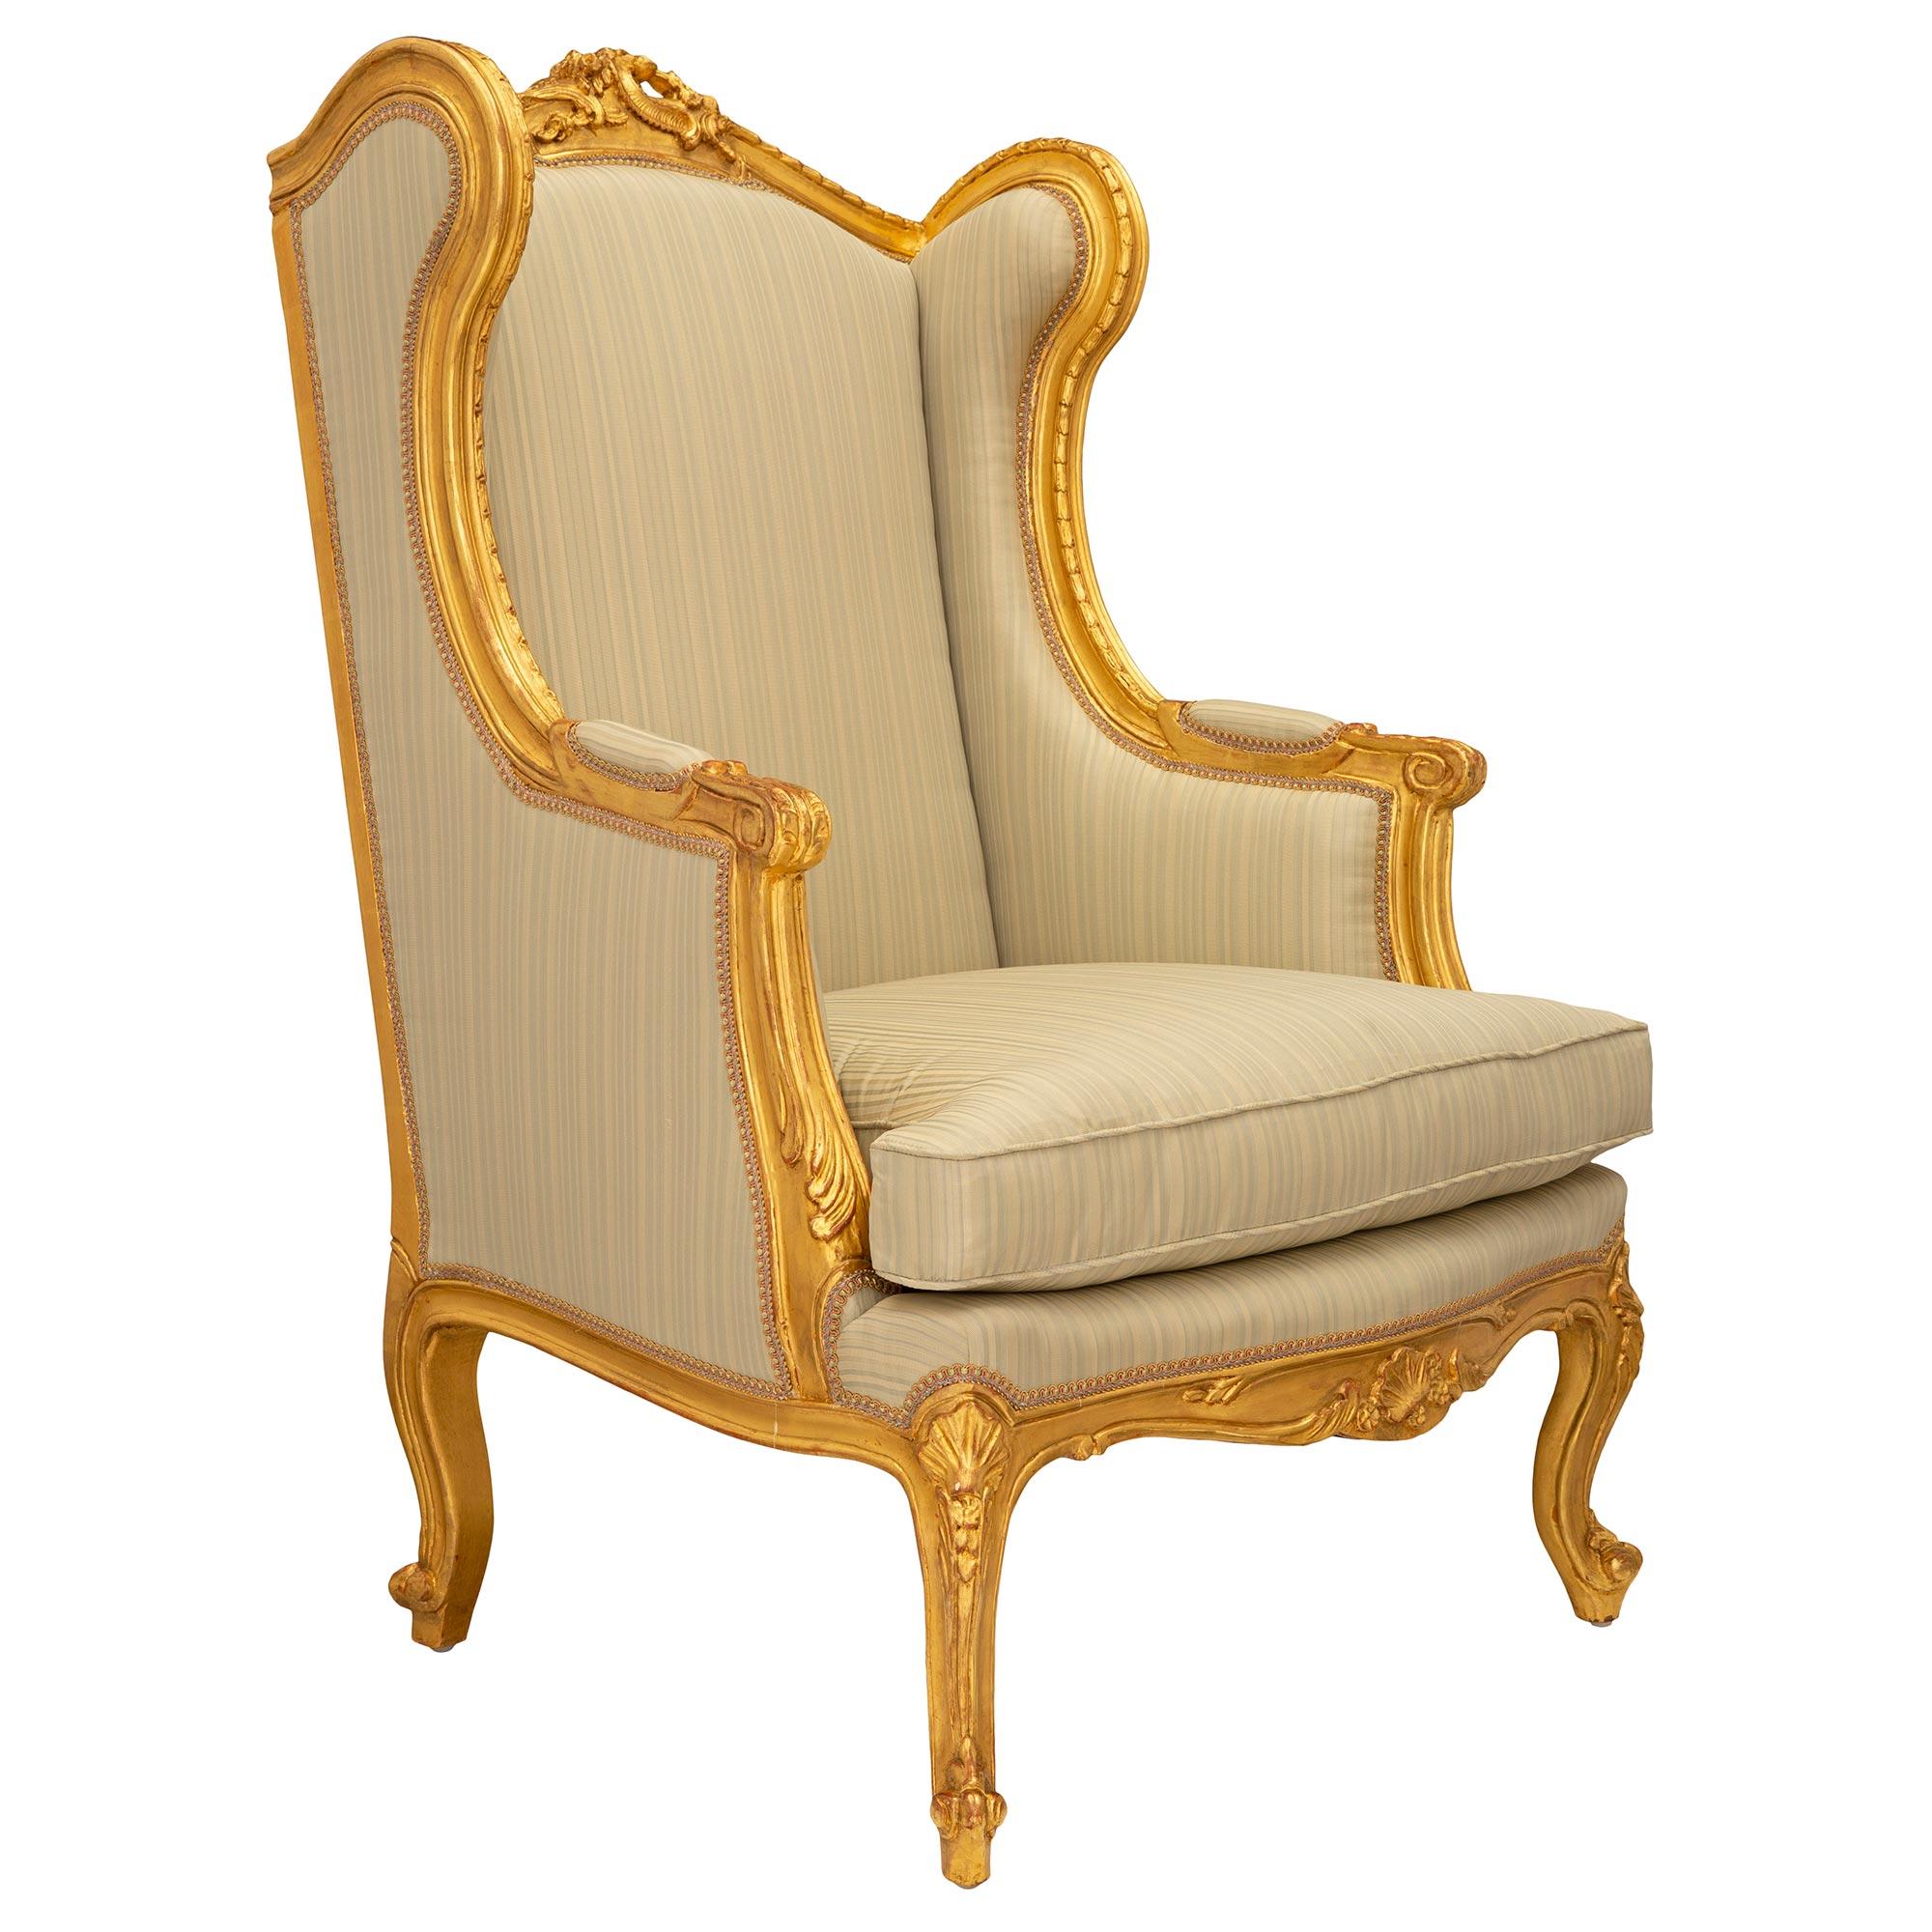 Une belle paire de fauteuils Bergères à Oreilles en bois doré de style Louis XV du XIXe siècle. Chaque fauteuil est surélevé par d'élégants pieds cabriole avec des pieds à volutes et des réserves de coquillages finement sculptés aux angles. La frise